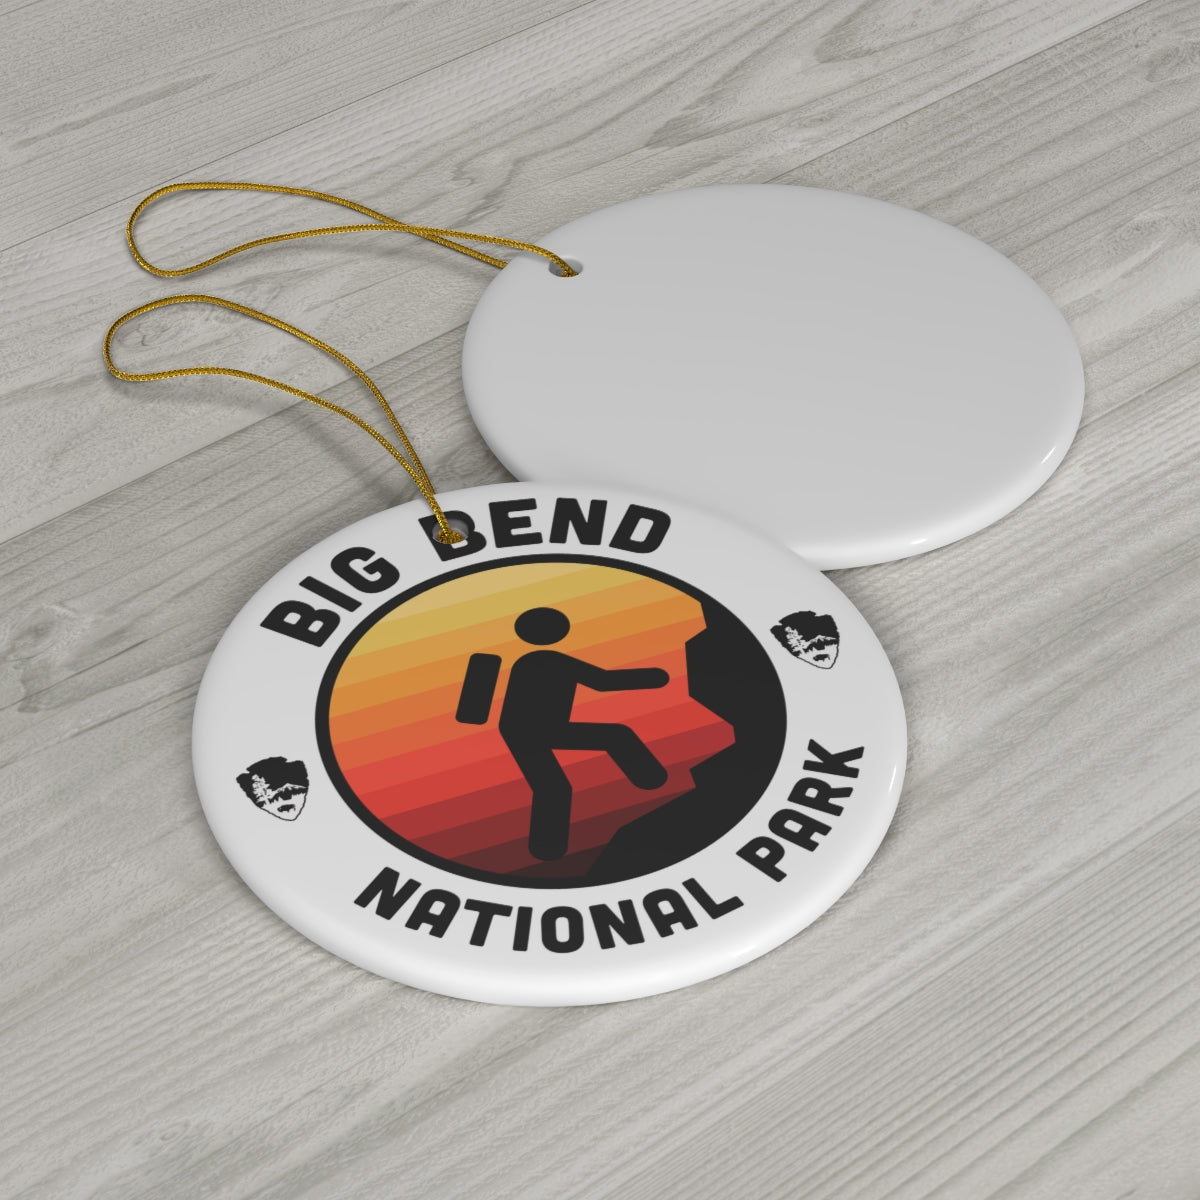 Big Bend National Park Ornament - Round Emblem Design